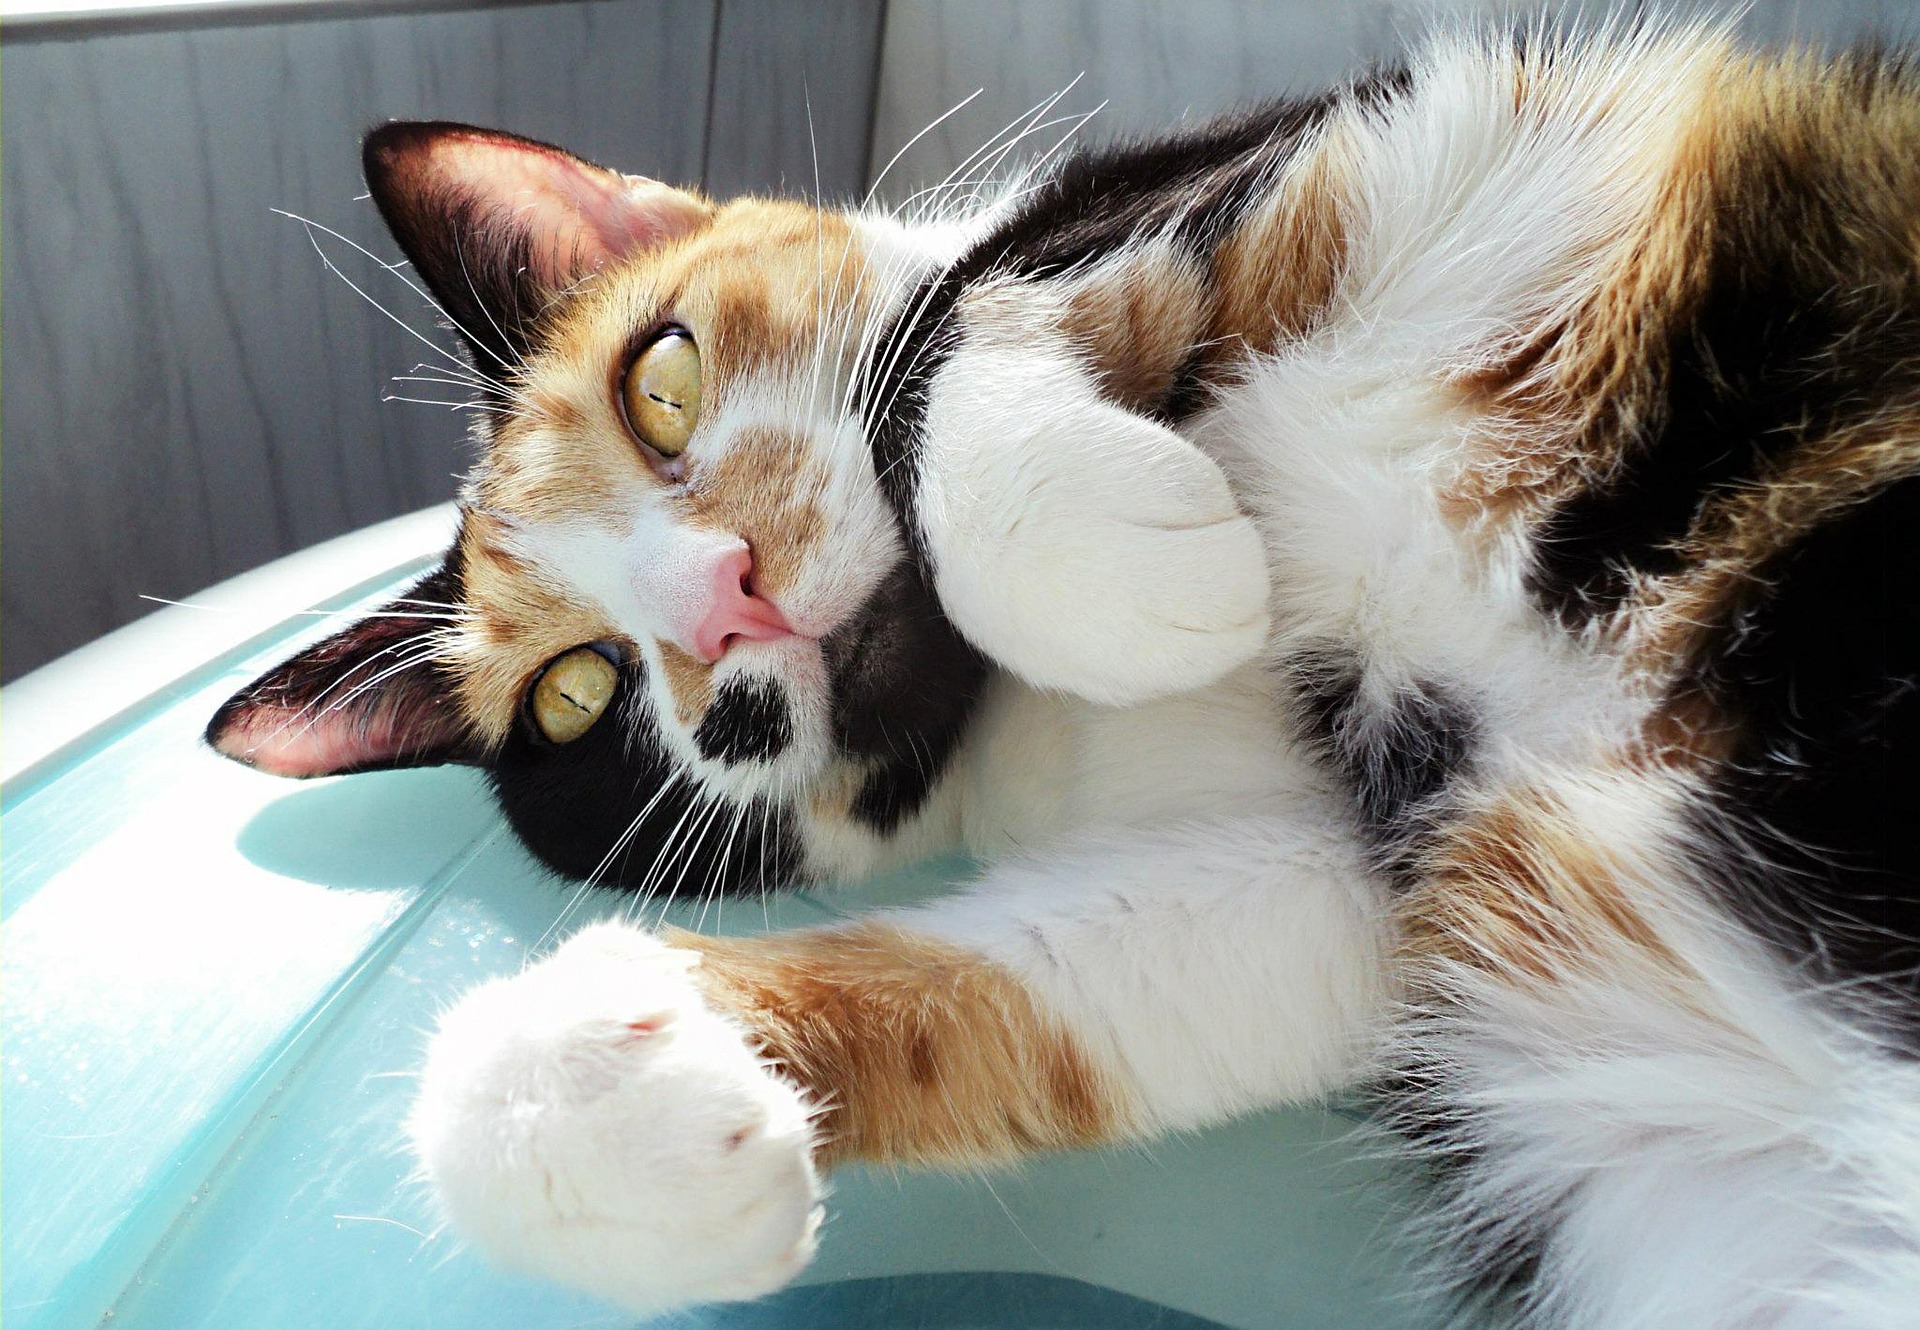 Kot bobtail jest kotem żywiołowym, ale równie mocno lubi pieszczoty i przytulanie.